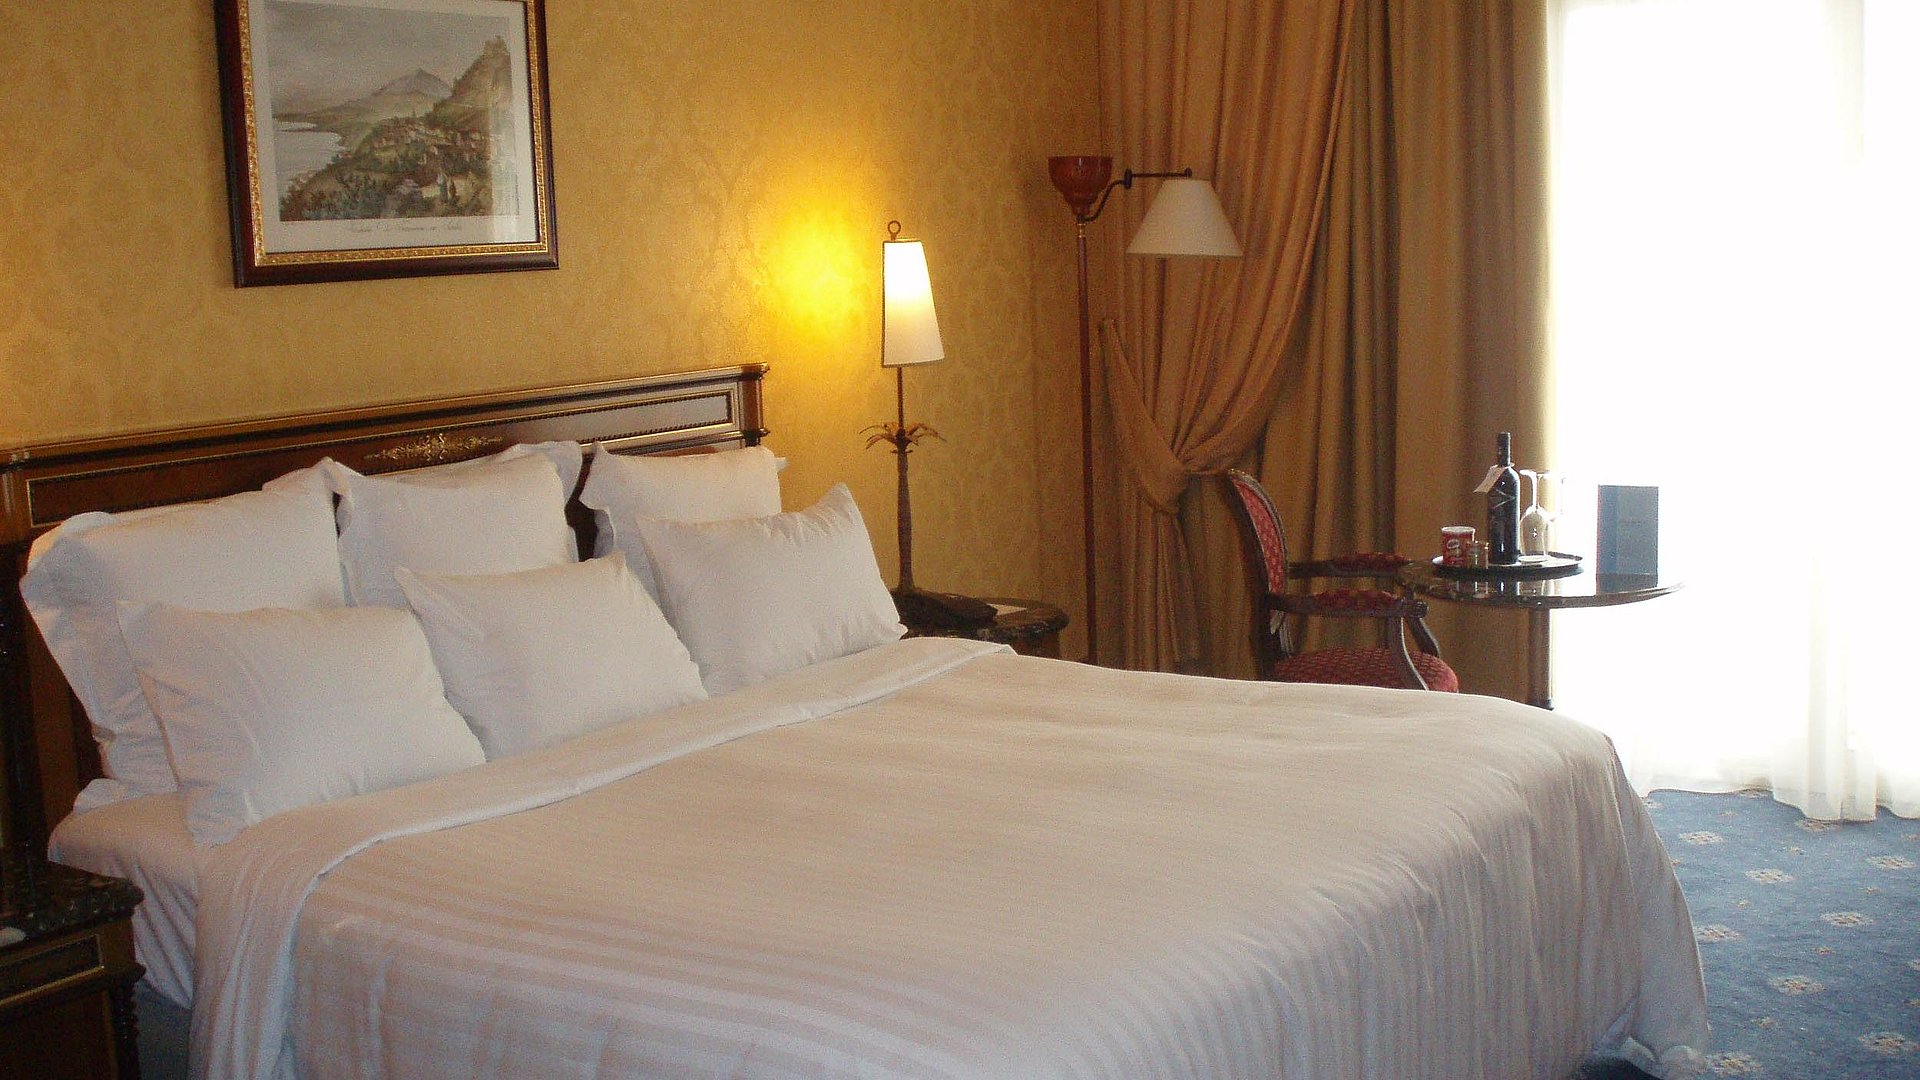 Hotel garni in Nürnberg - sehr ordentliches Hotelzimmer mit großem Bett und warmer Nachtlampe wird durch weiße Gardinen durchleuchtet